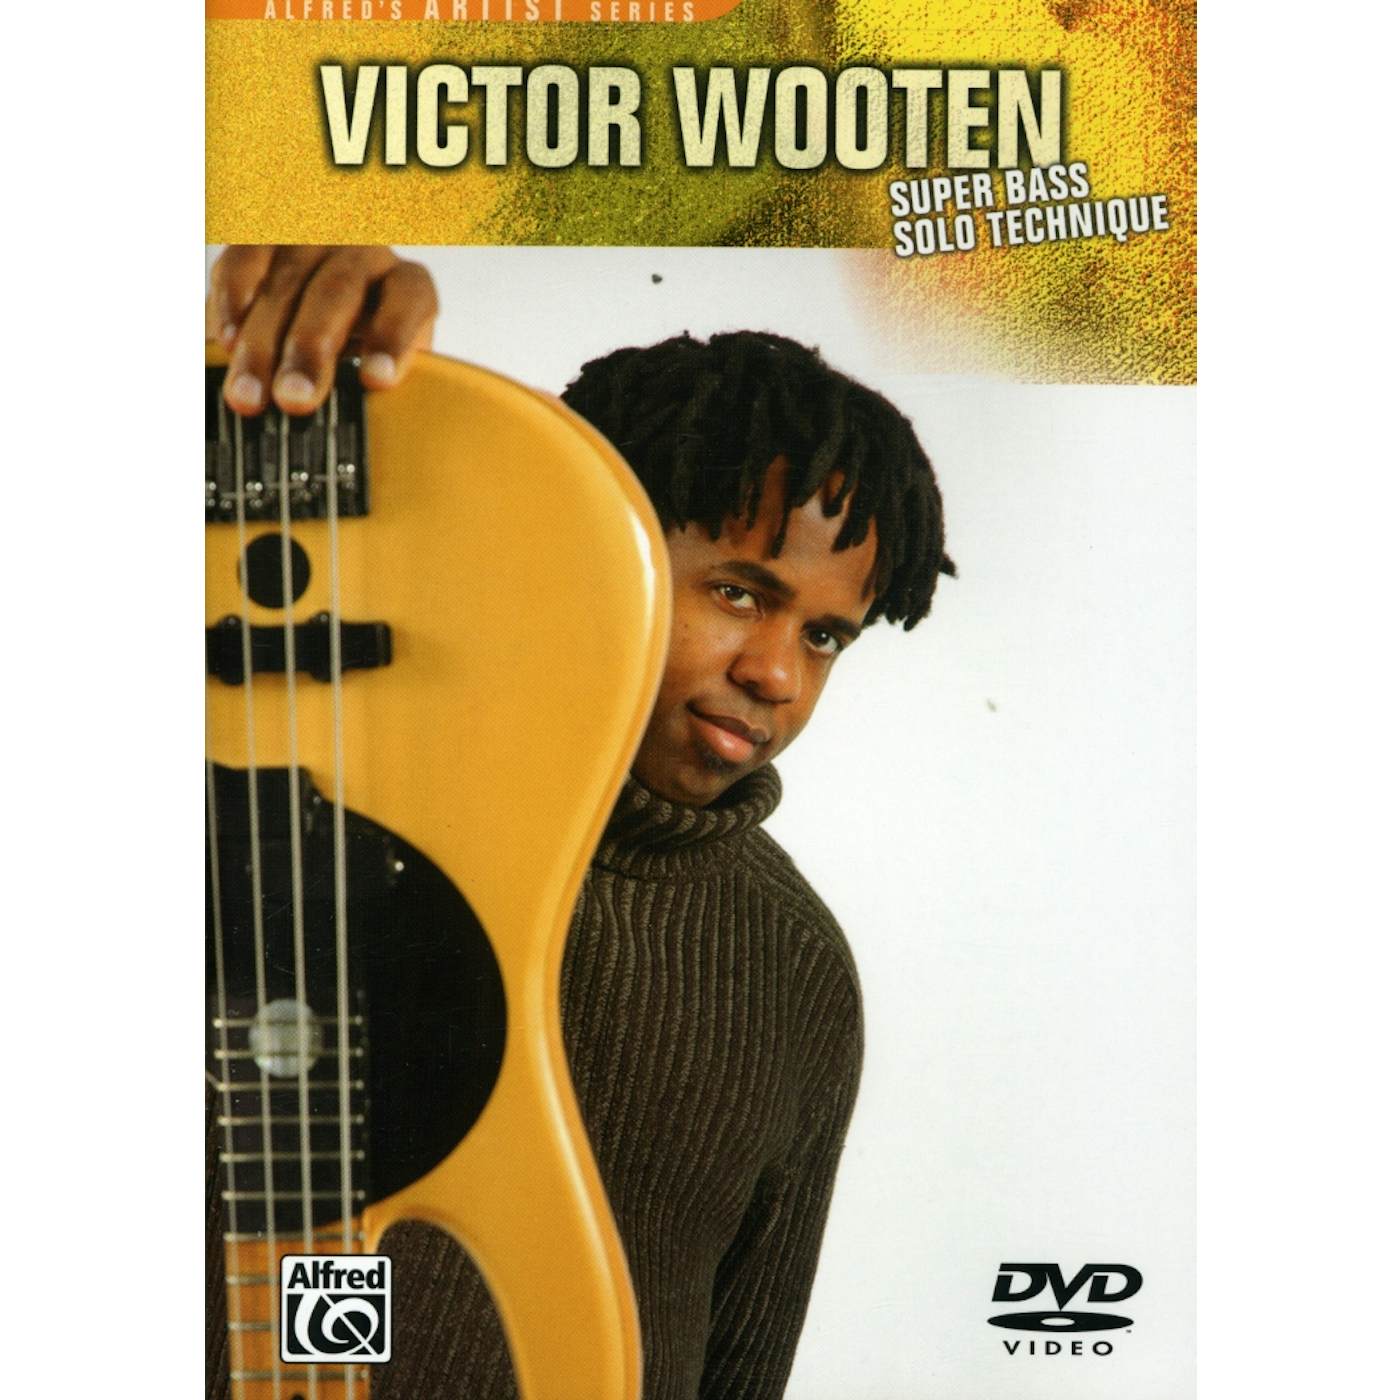 Victor Wooten SUPER BASS SOLO DVD